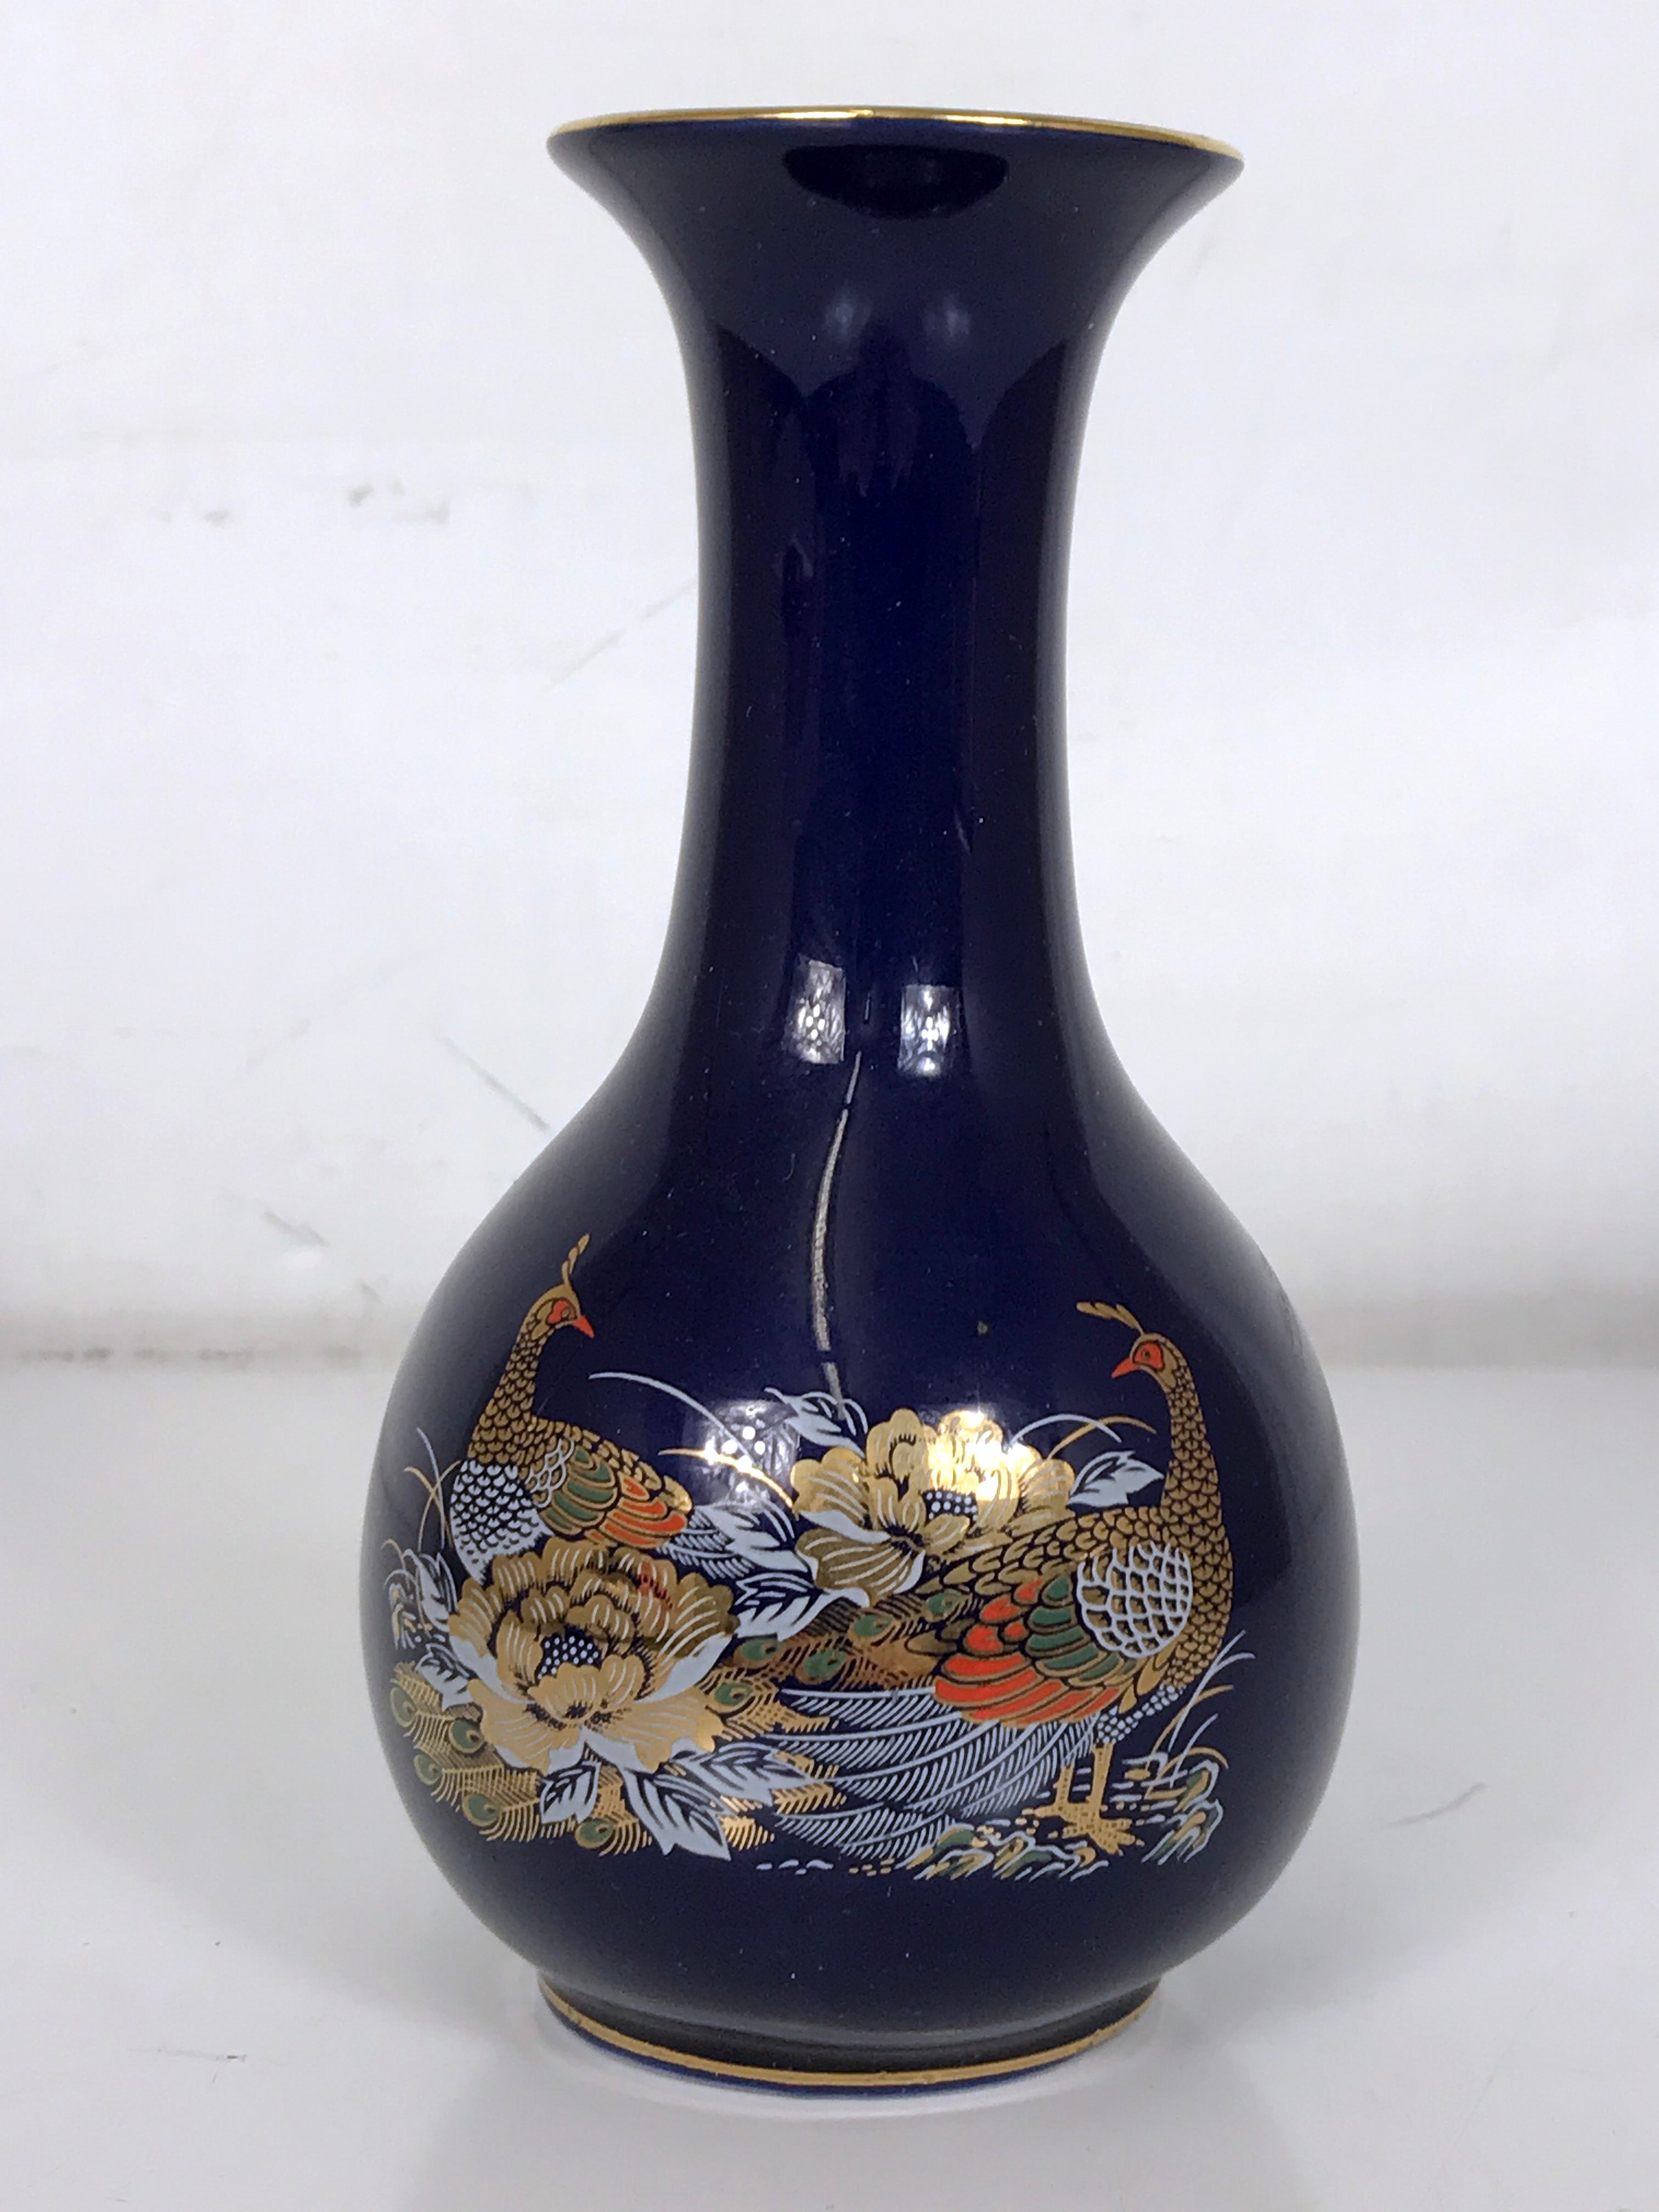 Vintage 7.25" Cobalt Blue Porcelain Japanese Flower Vase with Peacock Design